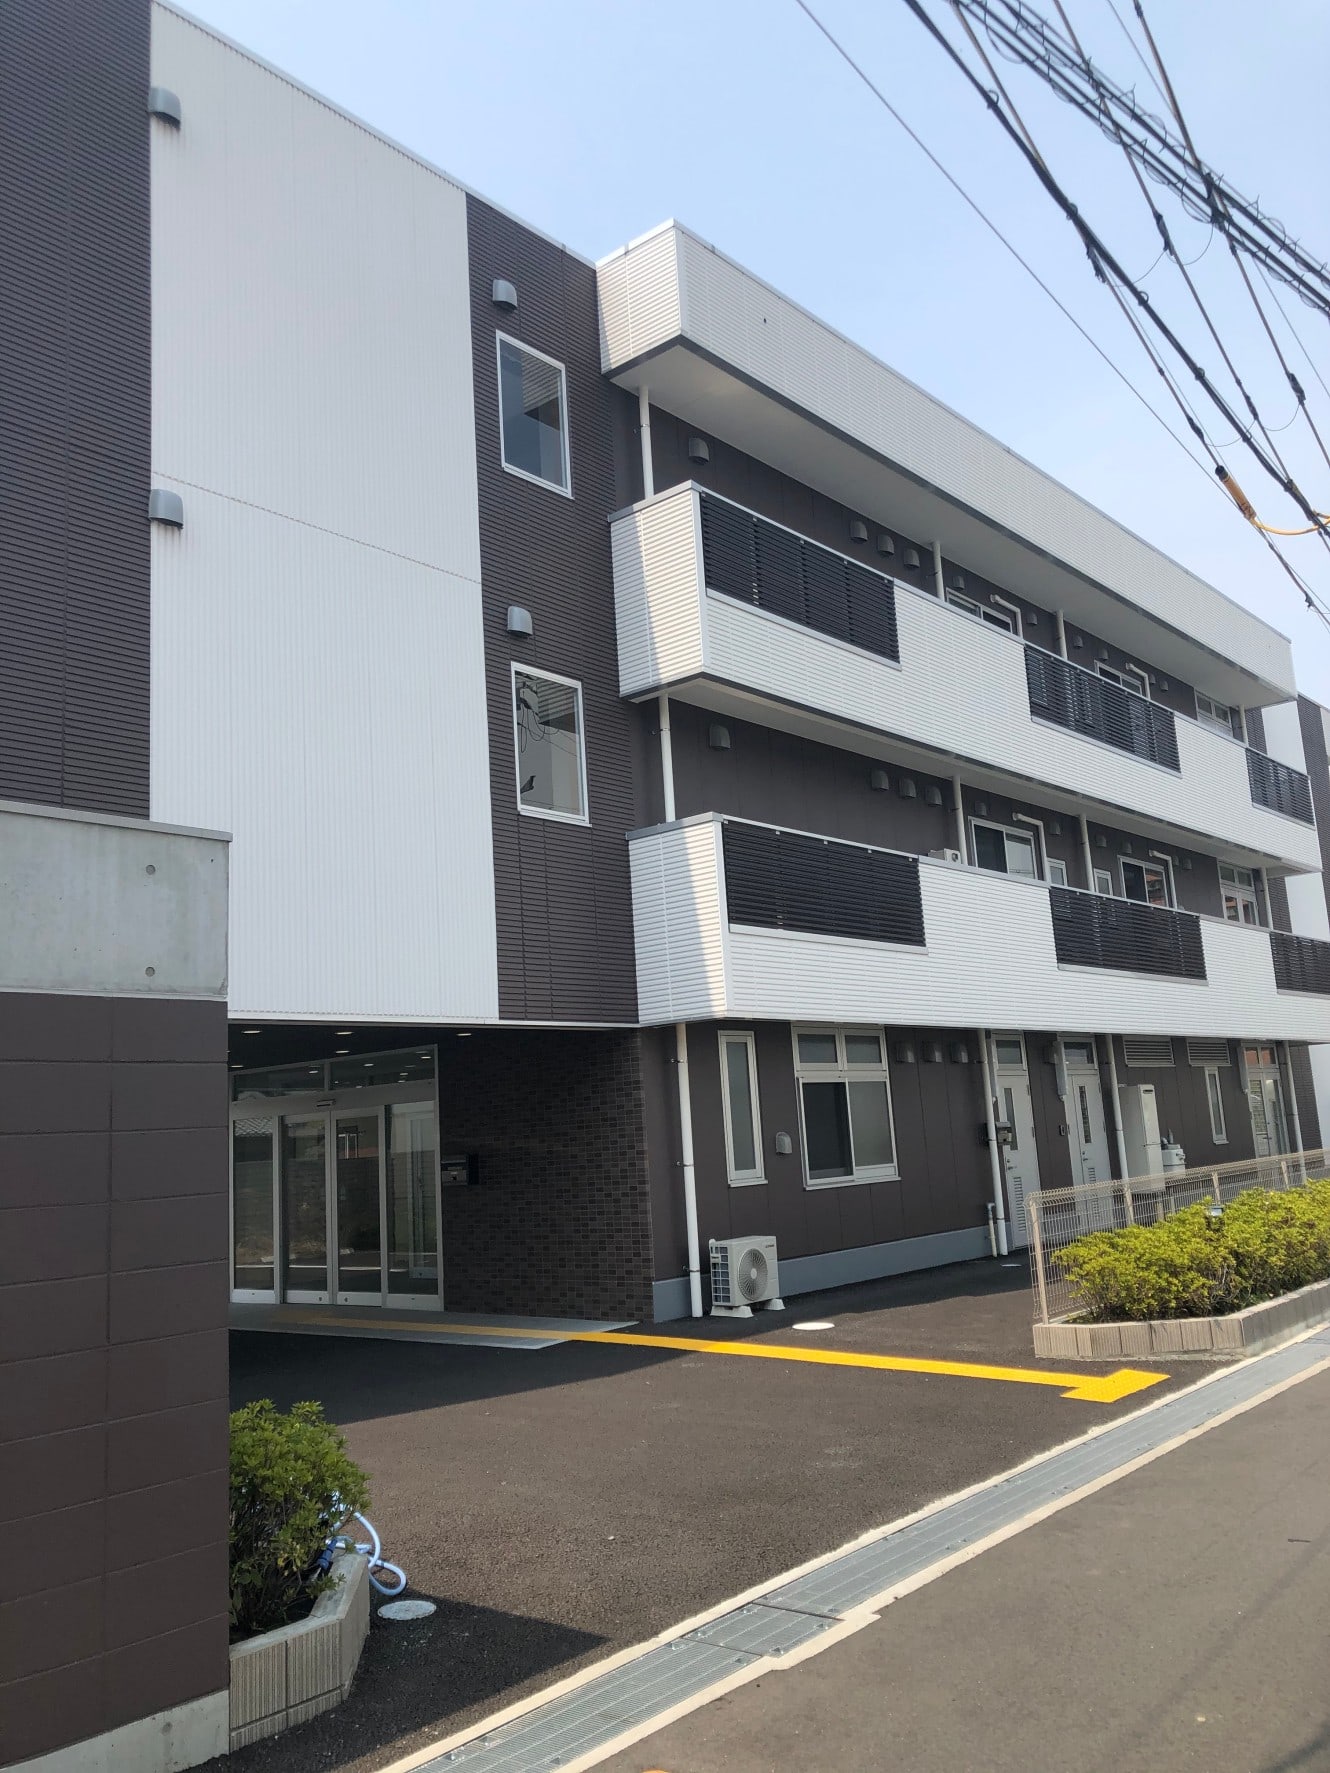 大阪府のホスピス型住宅施設紹介 | ホスピス型住宅のCUCホスピス求人採用サイト